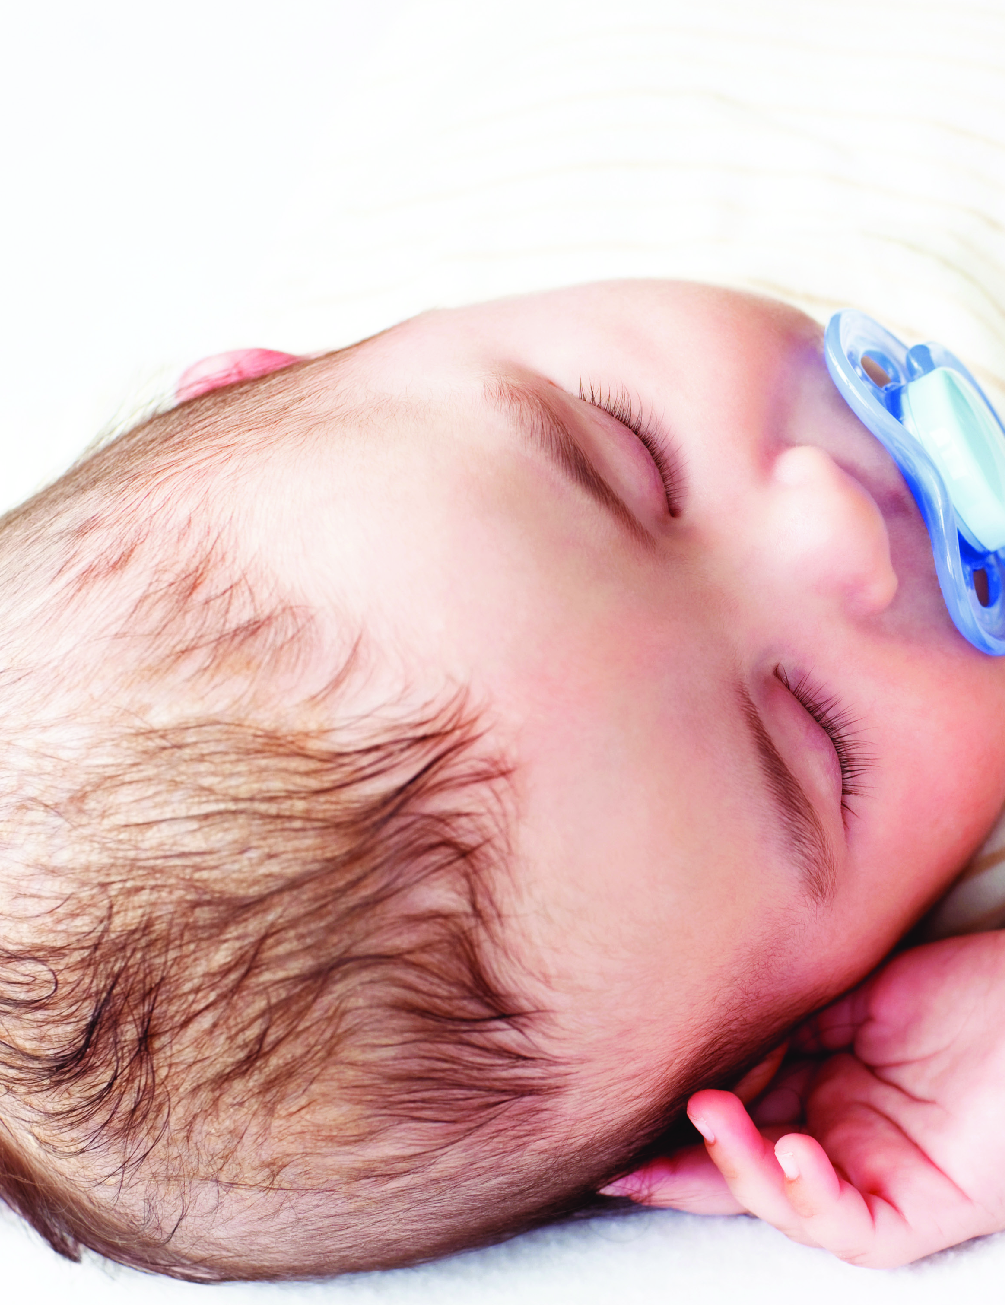 Endorsing Safe Infant Sleep